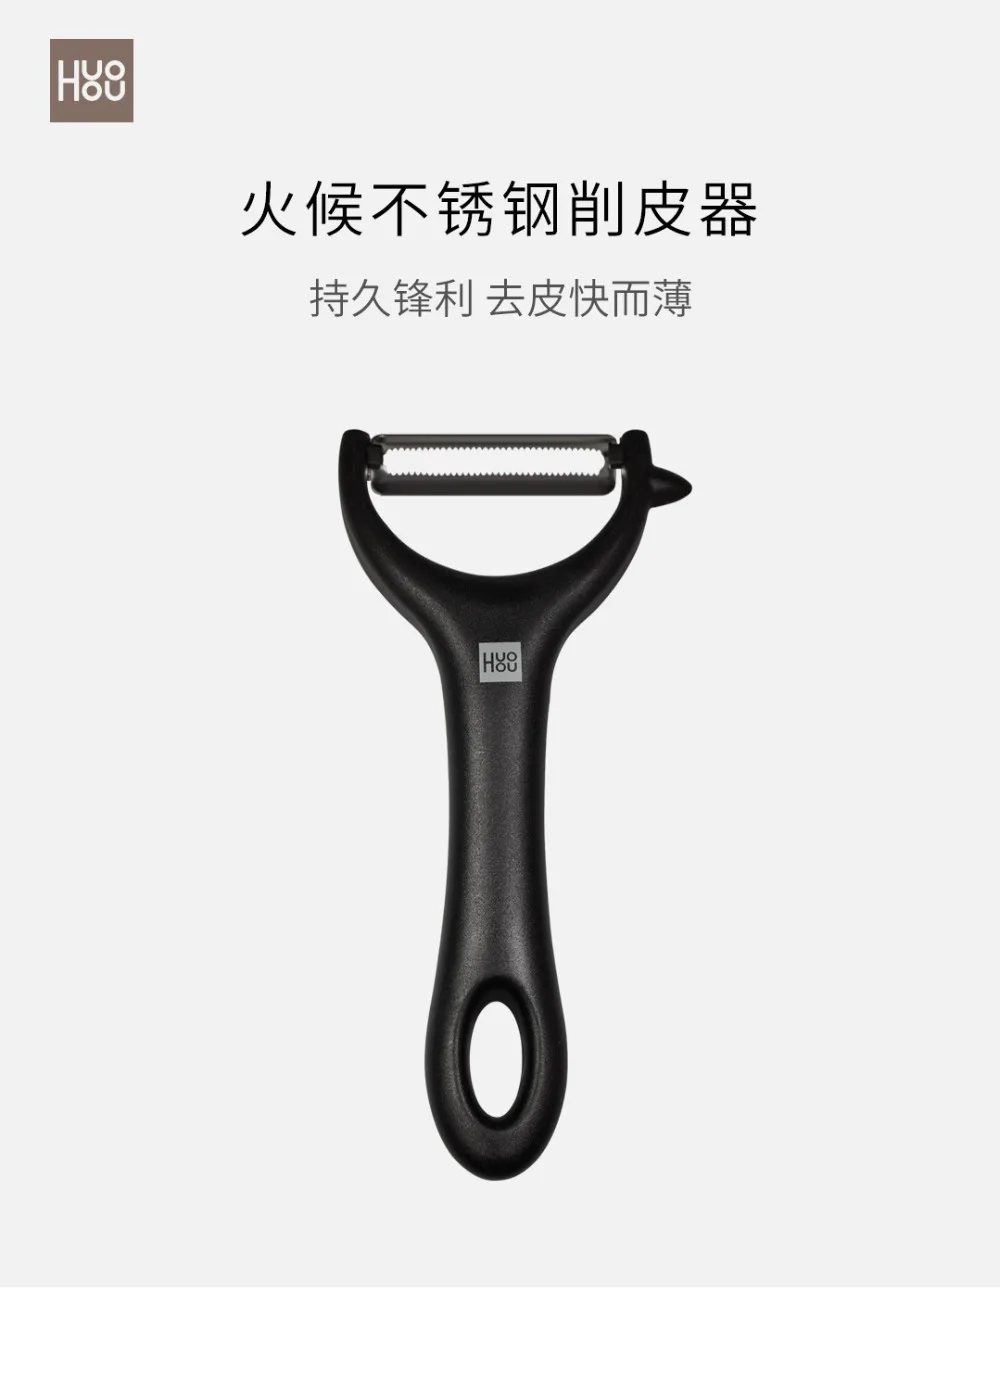 MI Mijia Huohou нож для чистки дыни и фруктов из нержавеющей стали, Очищающий от кожуры Многофункциональный строгальный нож для чистки кожи кухонные принадлежности